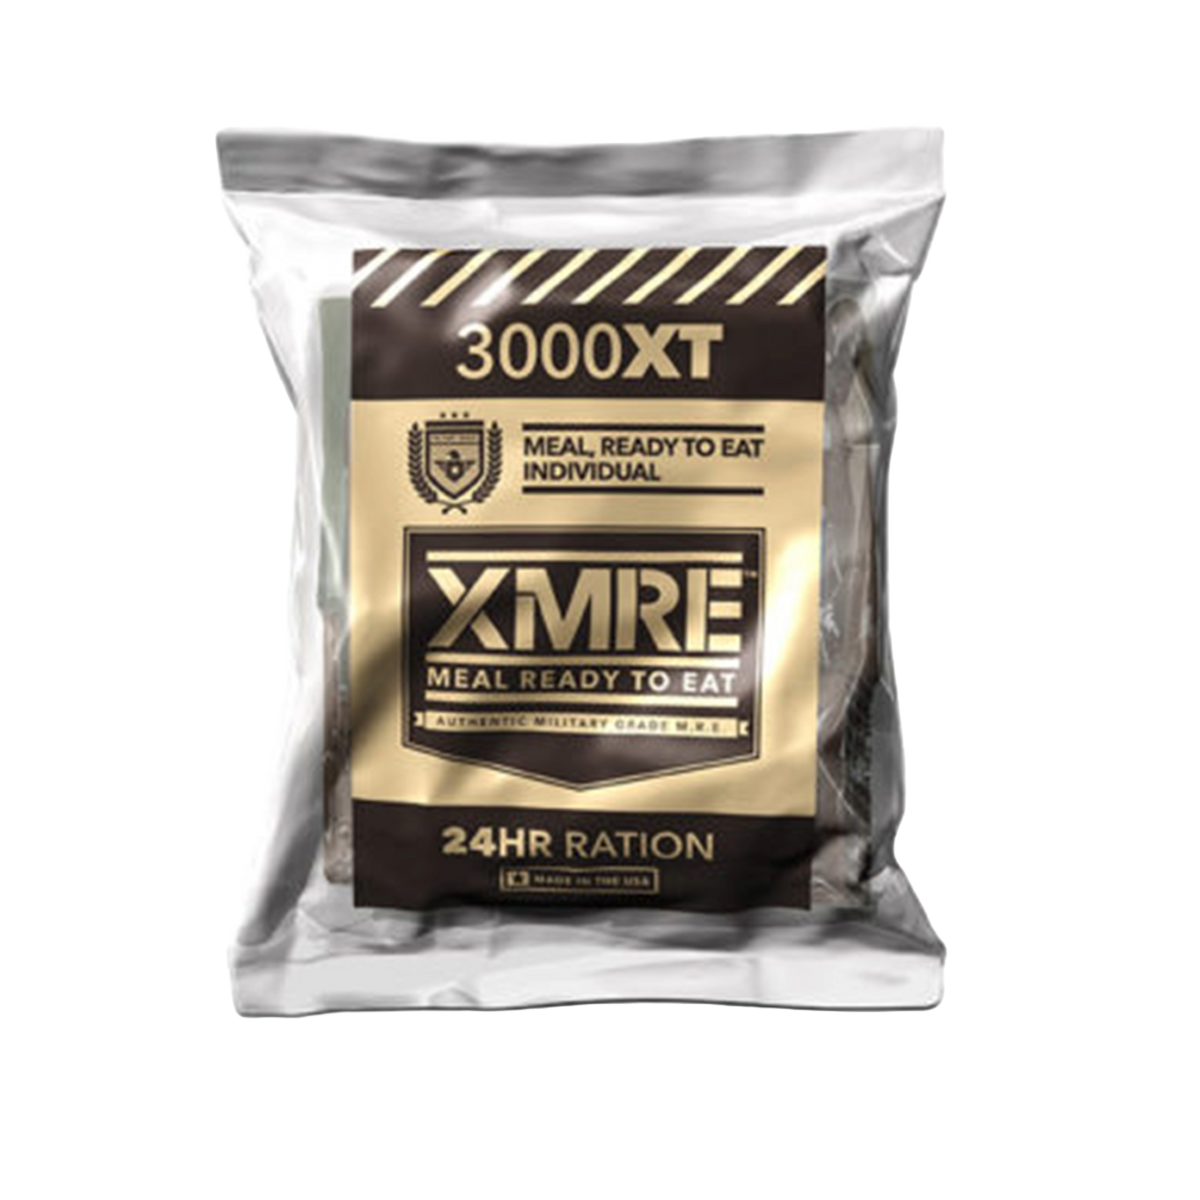 XMRE 3000XT 24HR – CASE OF 6 MEALS FRH